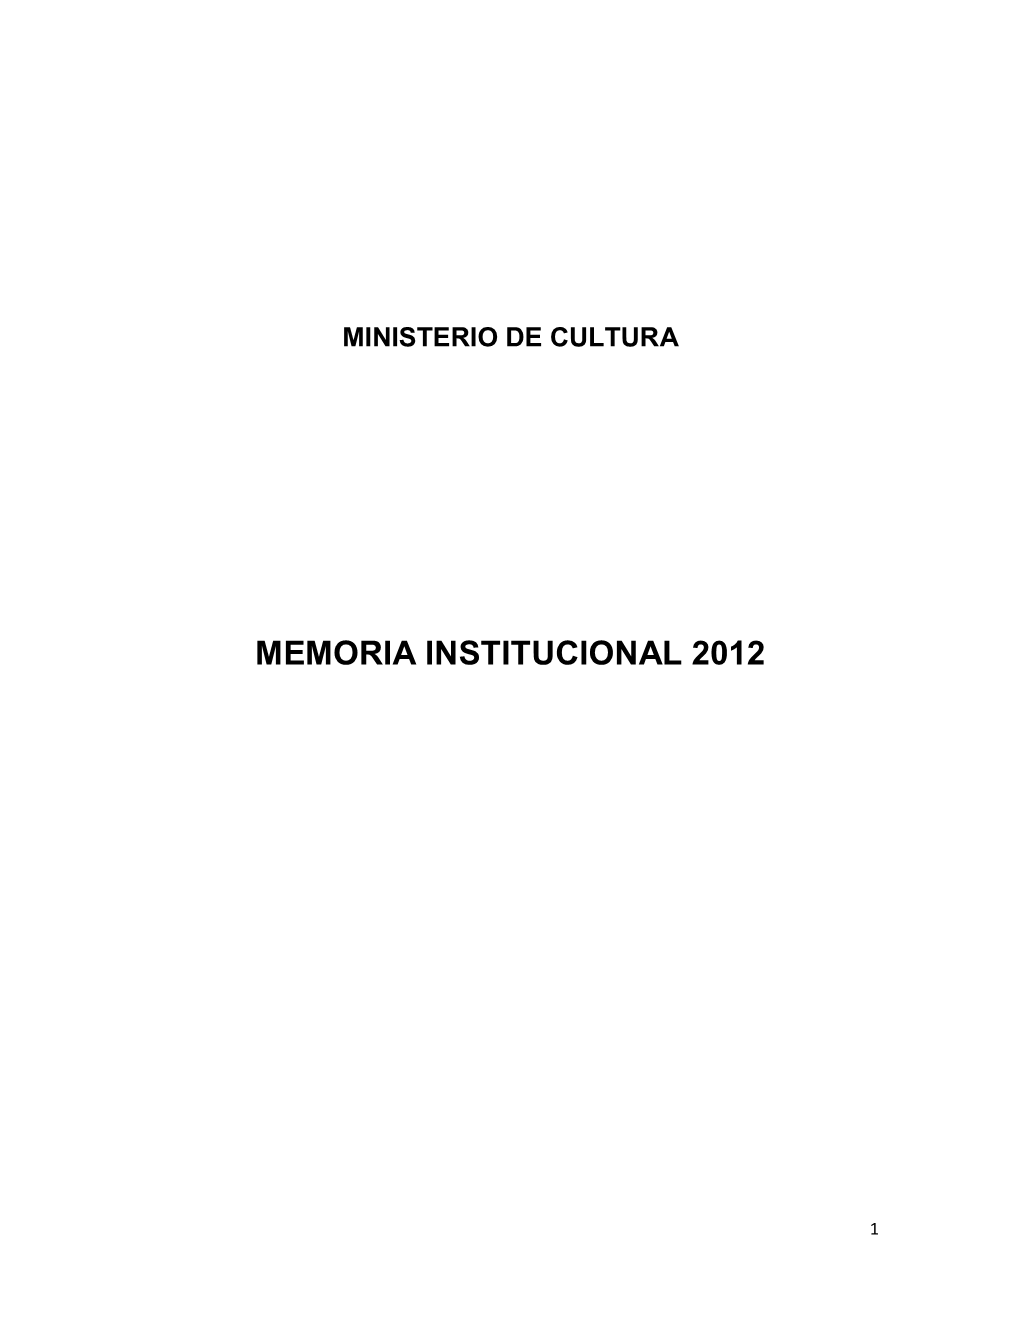 Memoria Institucional 2012